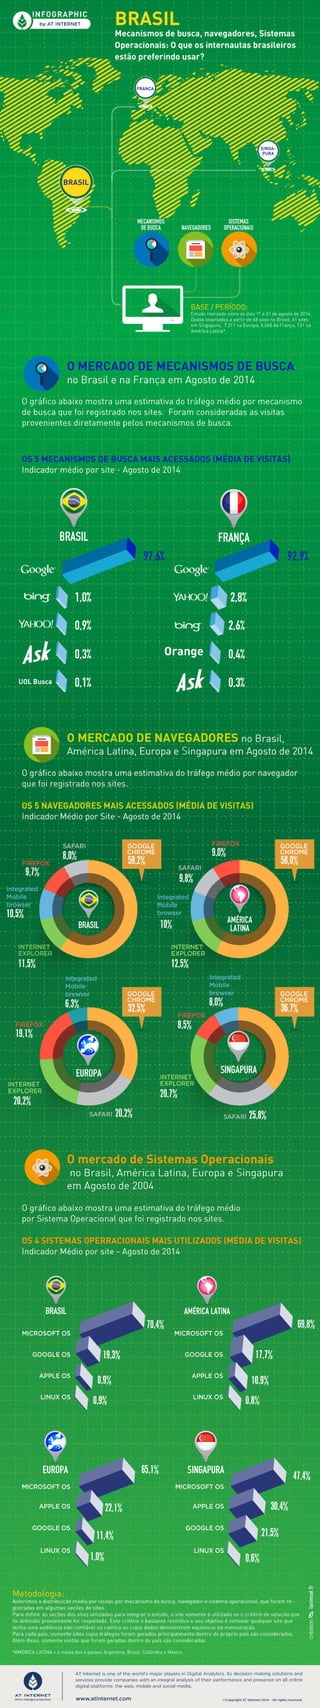 Brasil mecanismos de busca, navegadores, sistemas operacionais - Agosto 2014